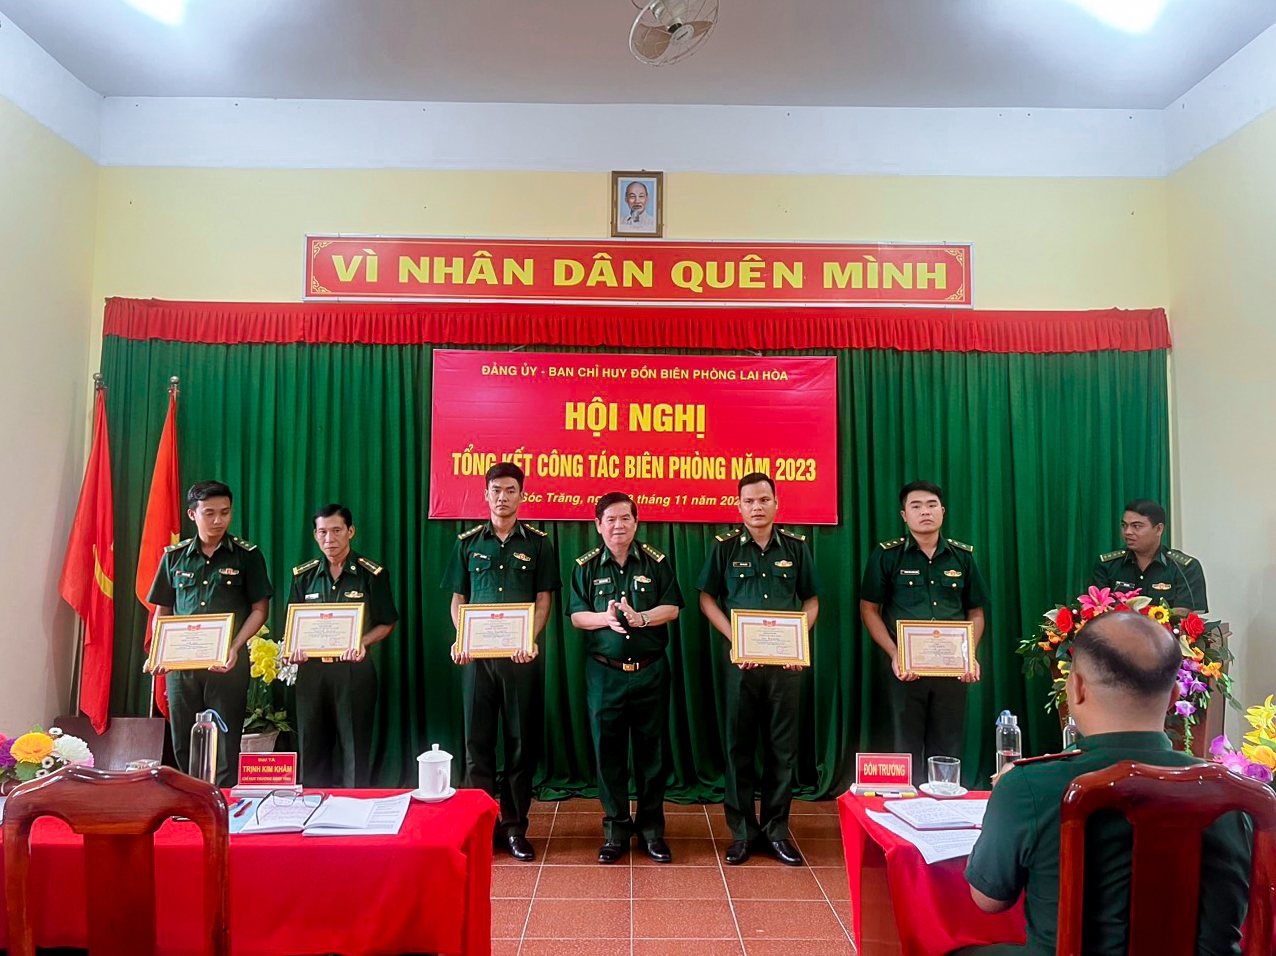 Đại tá Trịnh Kinh Khâm, Chỉ huy trưởng BĐBP tỉnh Sóc Trăng trao khen thưởng cho các tập thể, cá nhân đồn Biên phòng Lai Hòa, có thành tích tích xuất sắc trong phong trào thi đua quyết thắng năm 2023